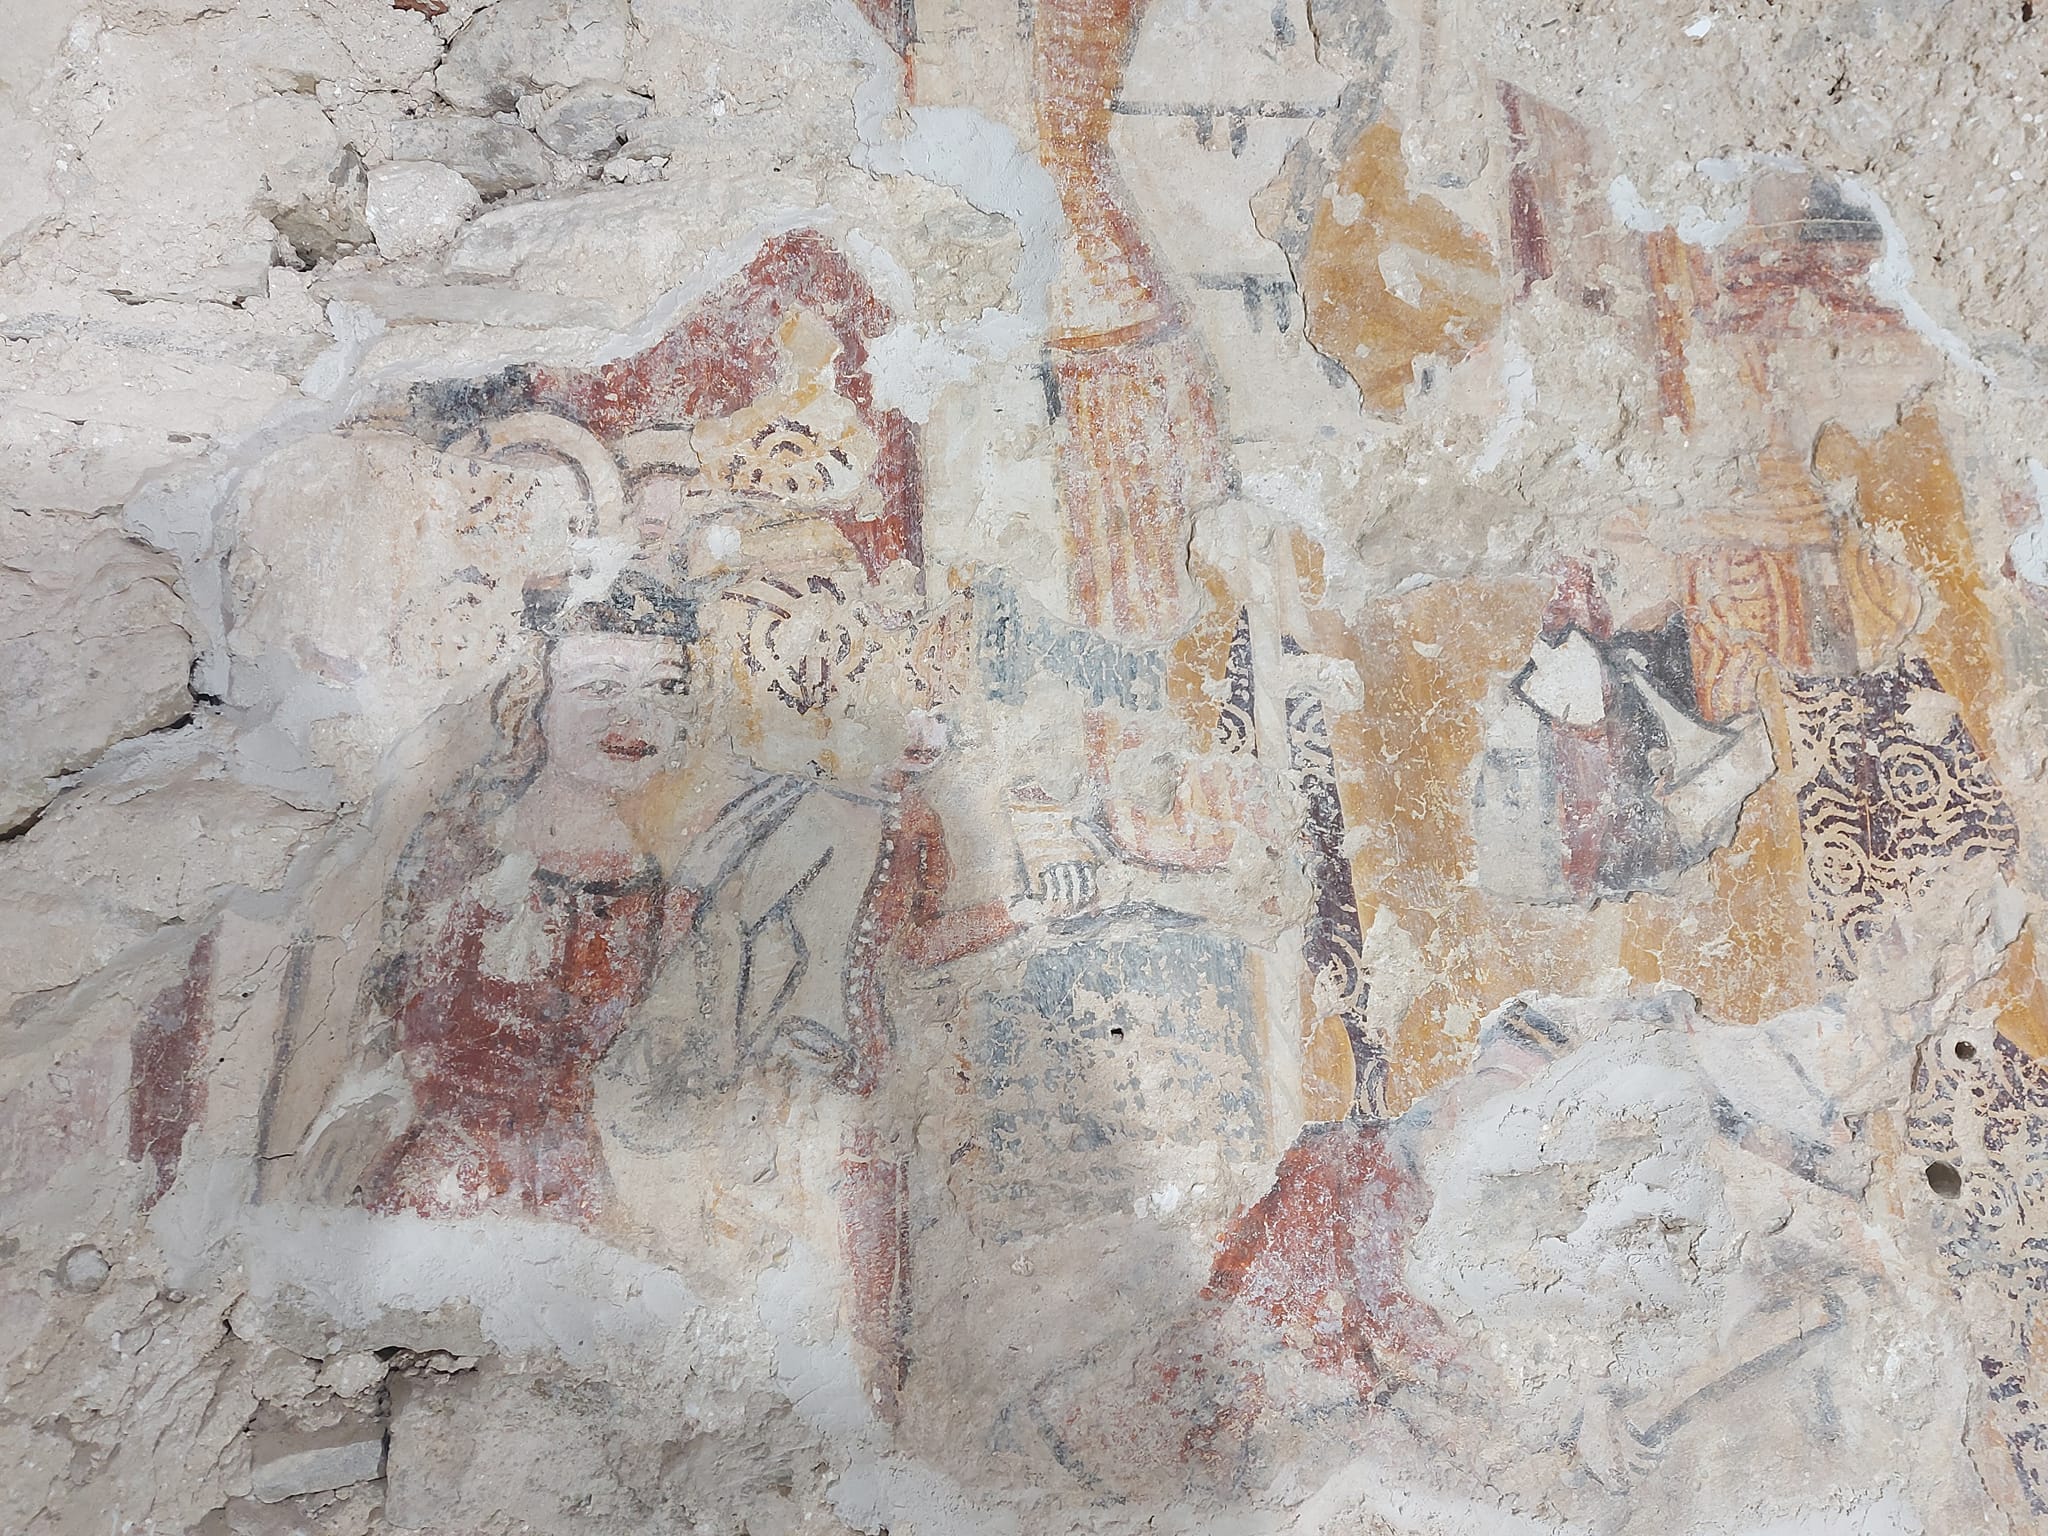 Középkori freskórészletek kerültek elő egy keszthelyi kápolnában